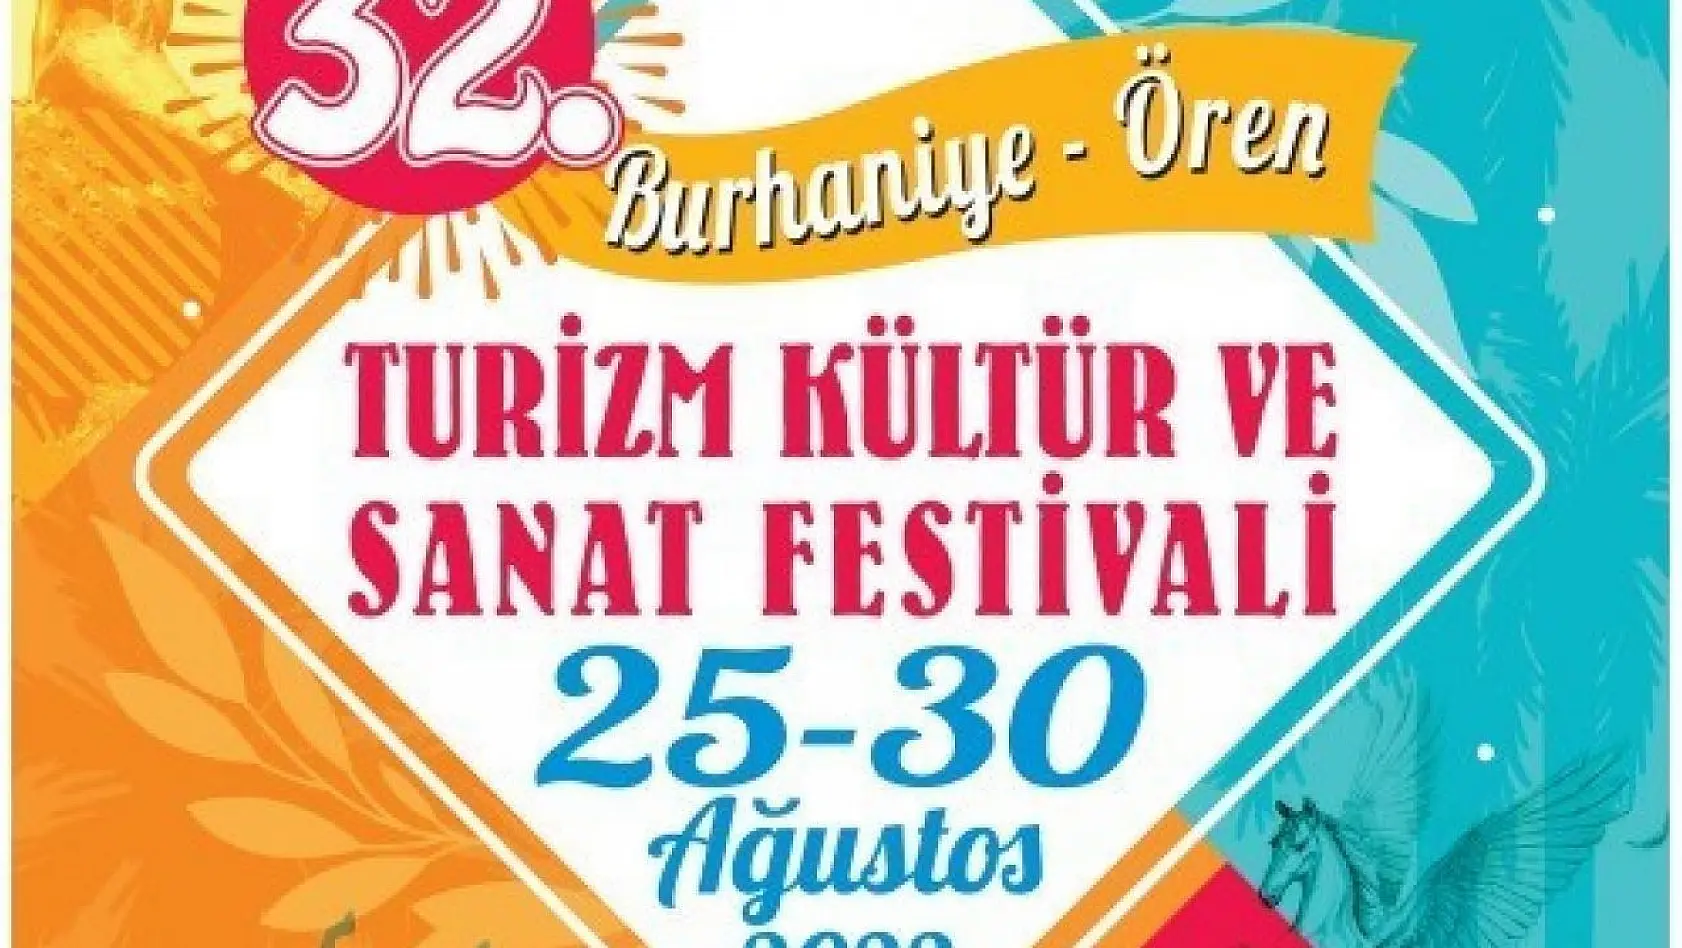 Burhaniye 32. Ören Turizm Kültür Ve Sanat Festivali başlıyor